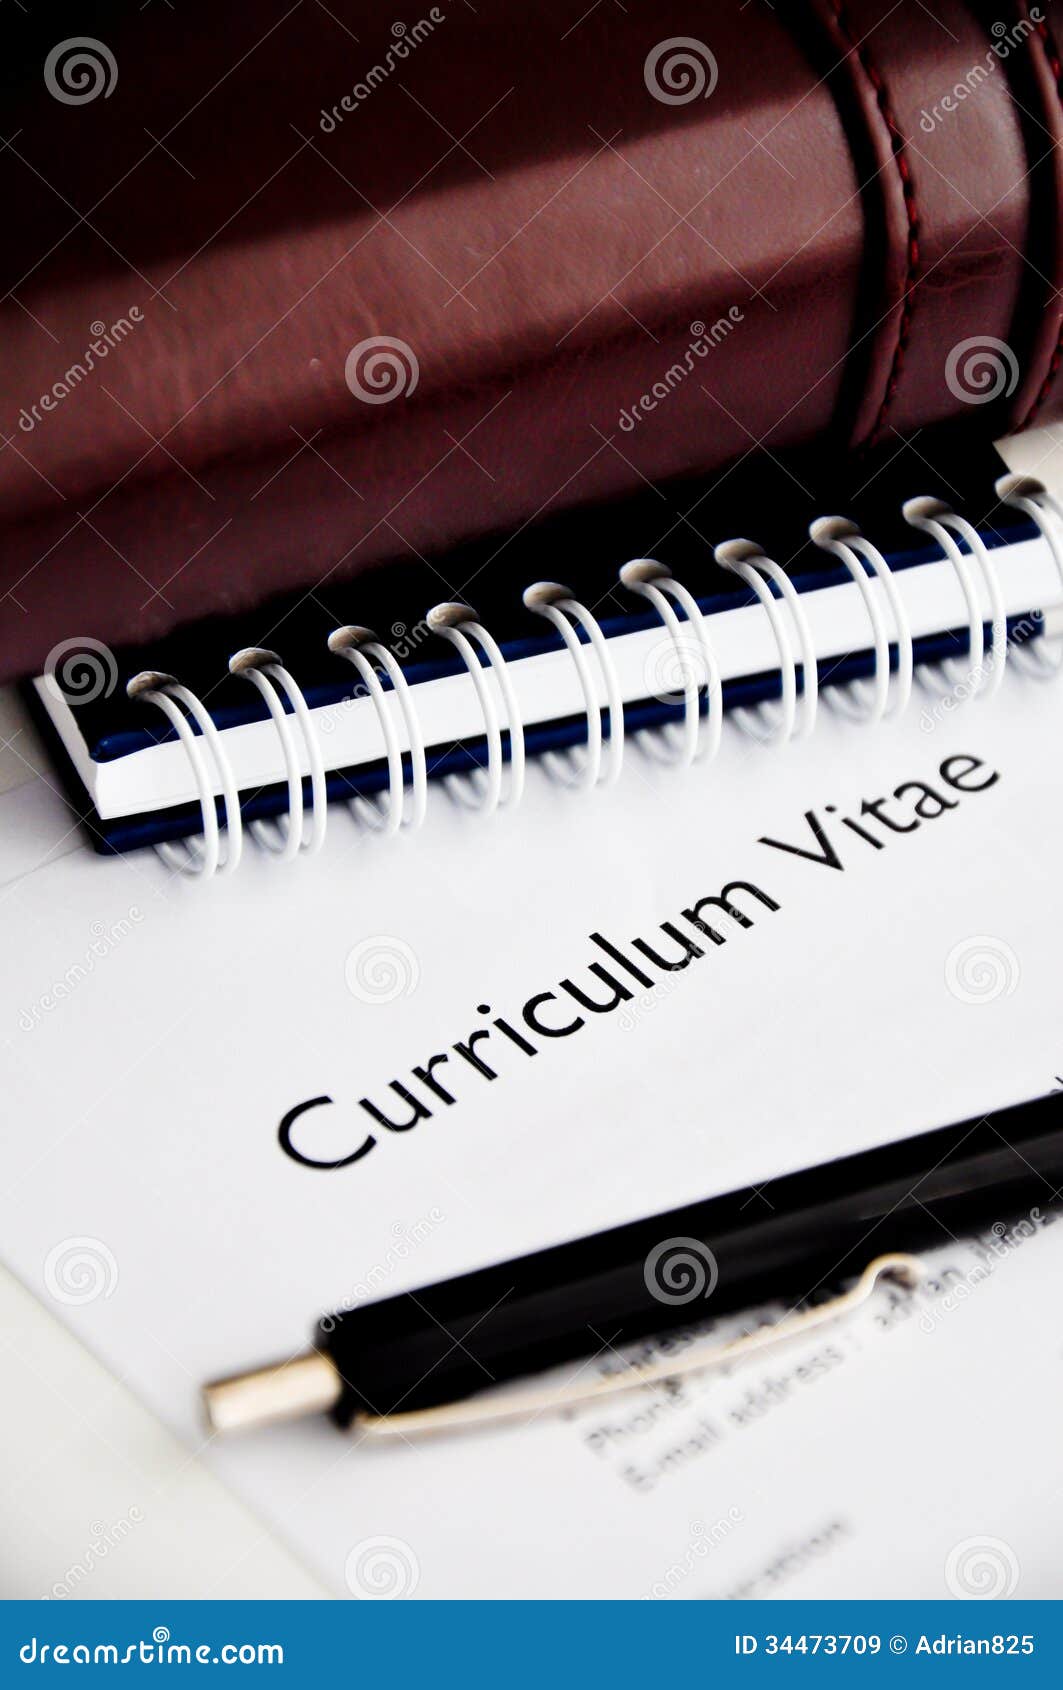 curriculum vitae or resume